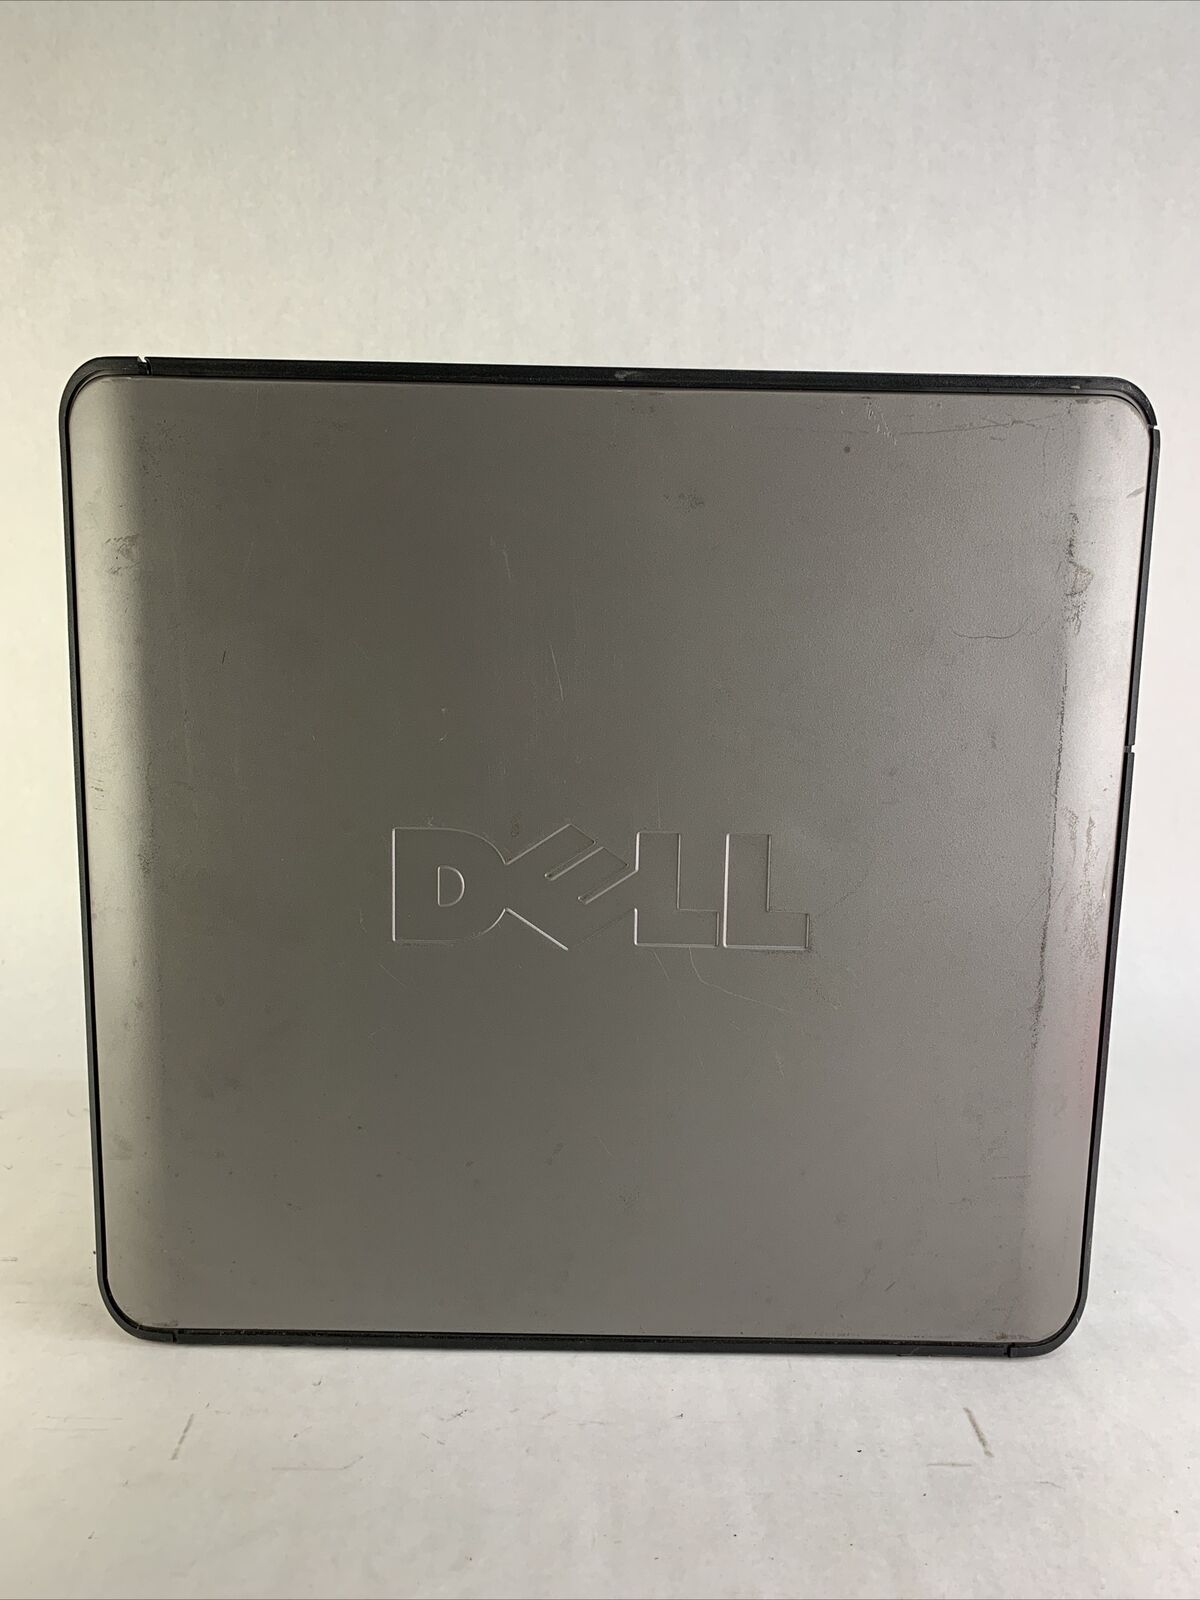 Dell Optiplex 360 MT Intel Pentium E5200 2.5GHz 2GB RAM No HDD No OS